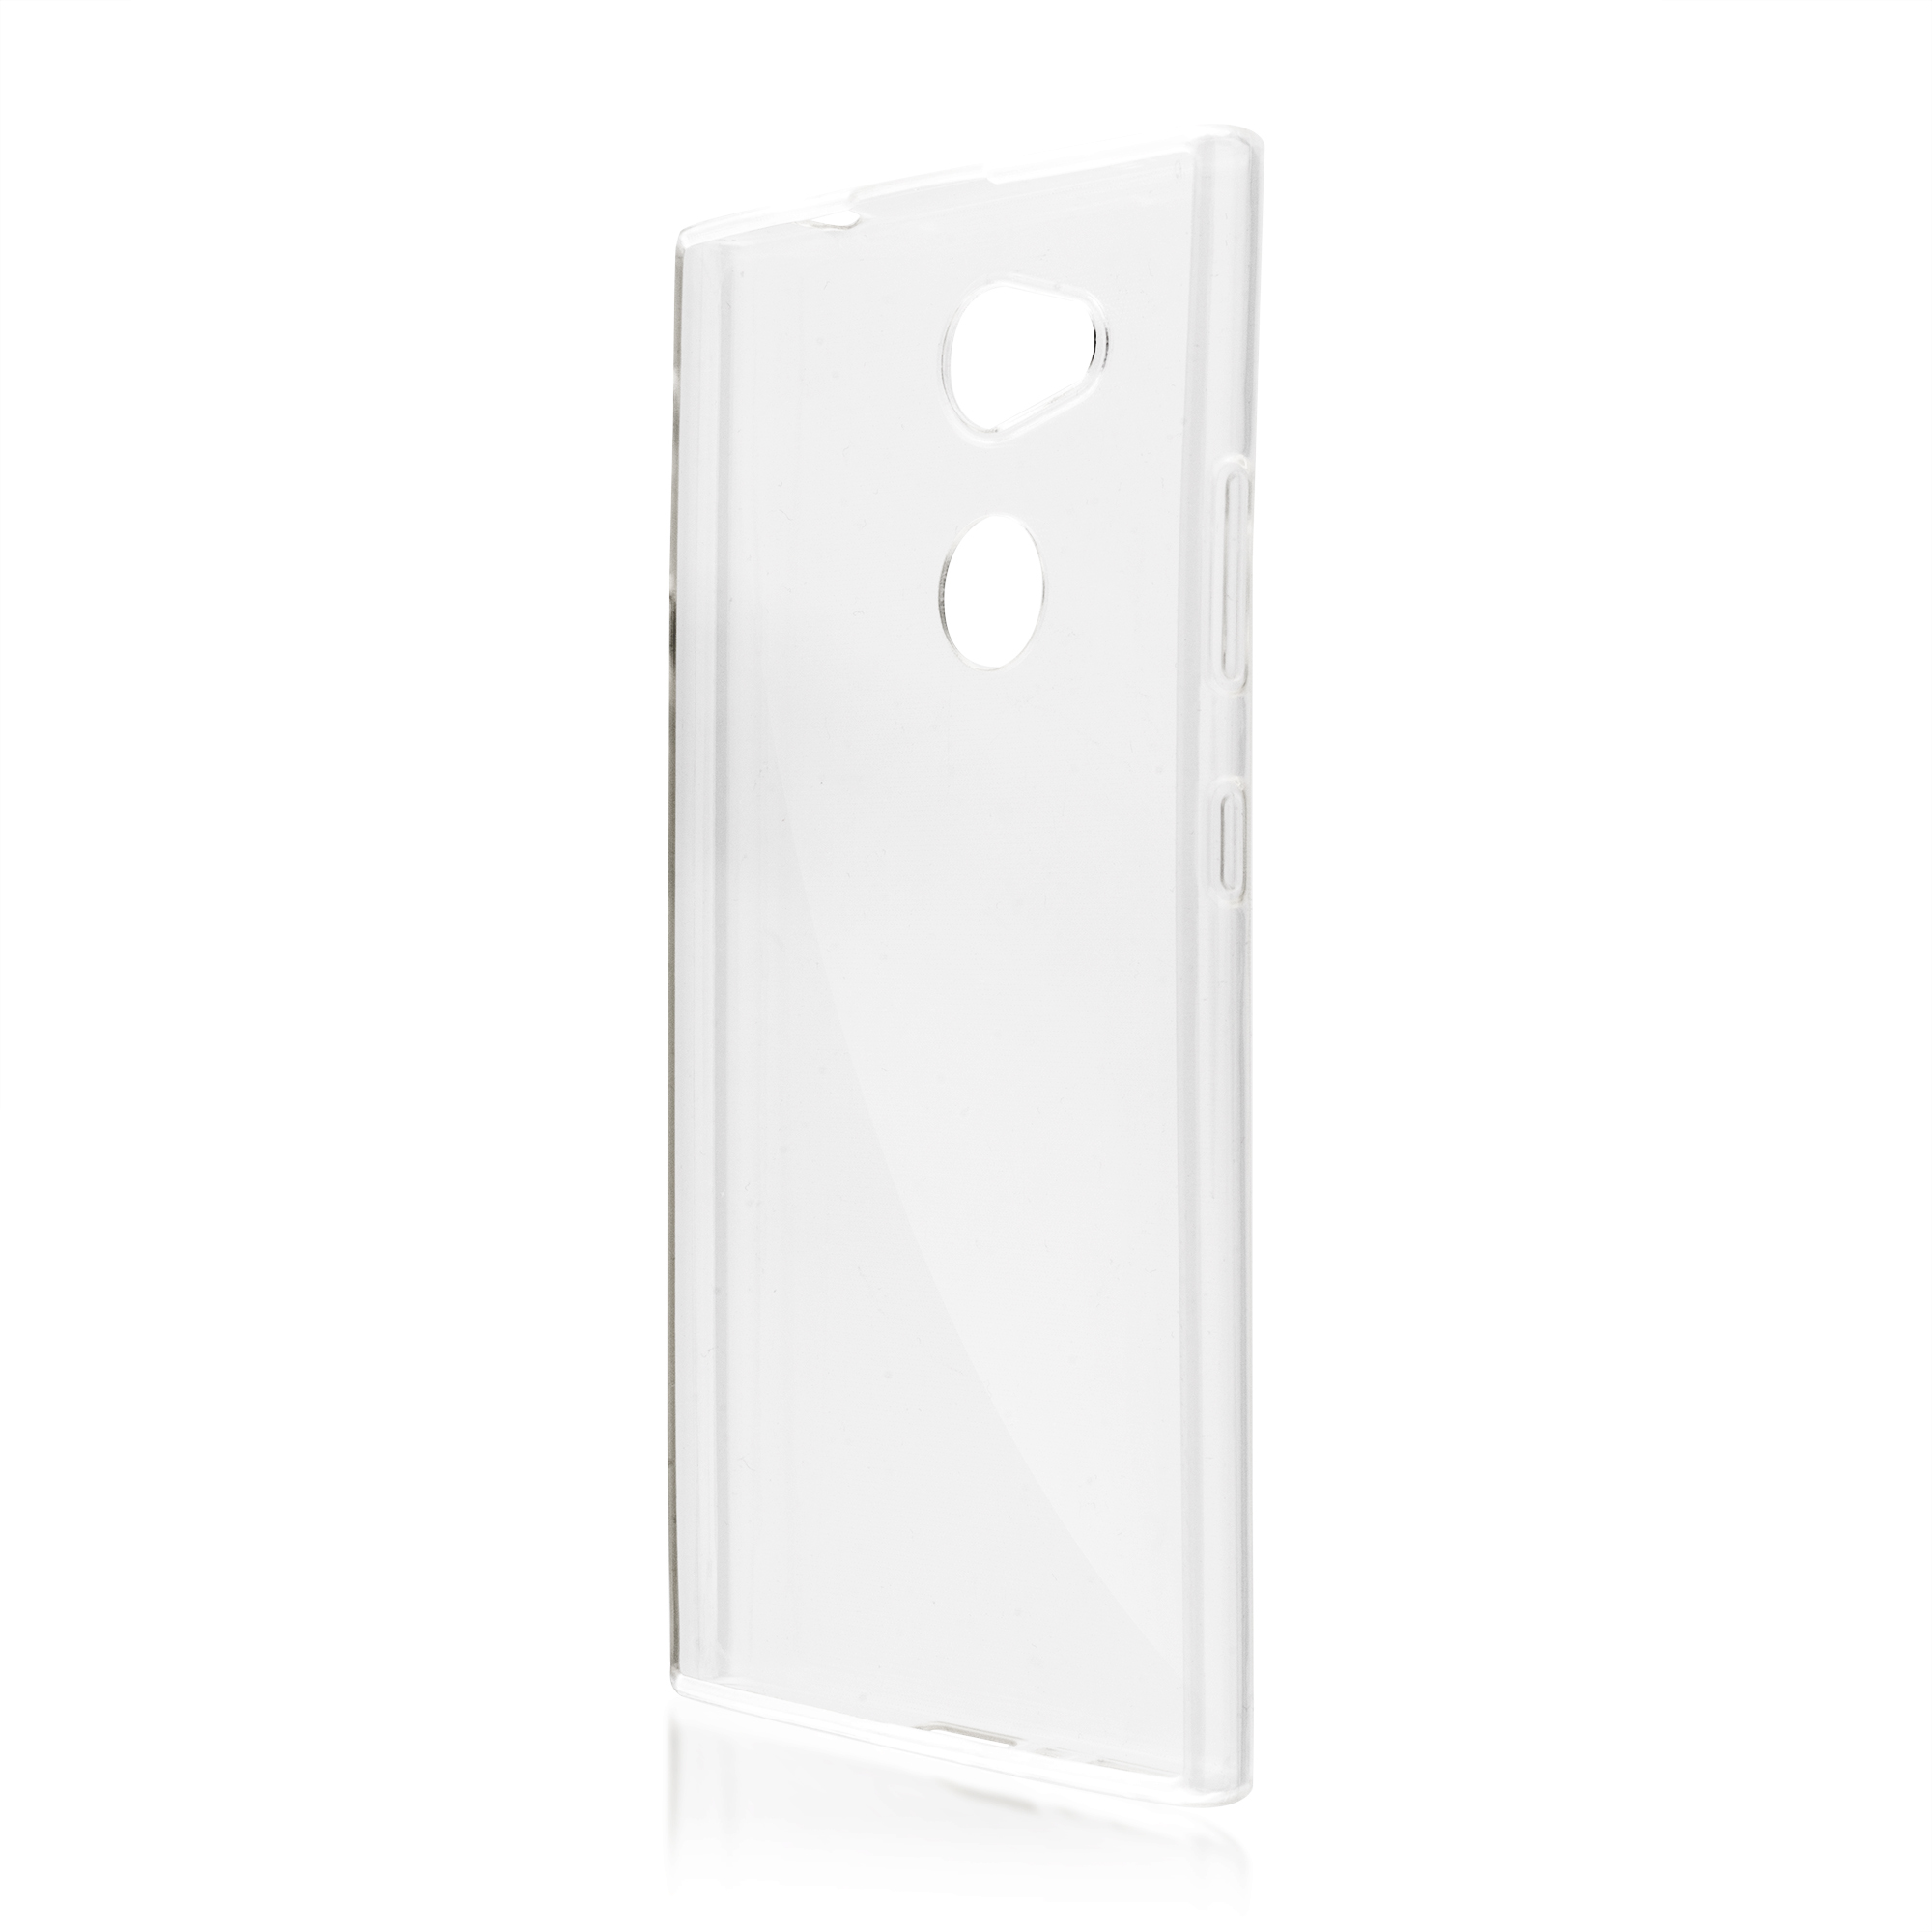 Чехол-накладка BROSCO для смартфона Sony L2, силикон, прозрачный (L2-TPU-TRANSPARENT)